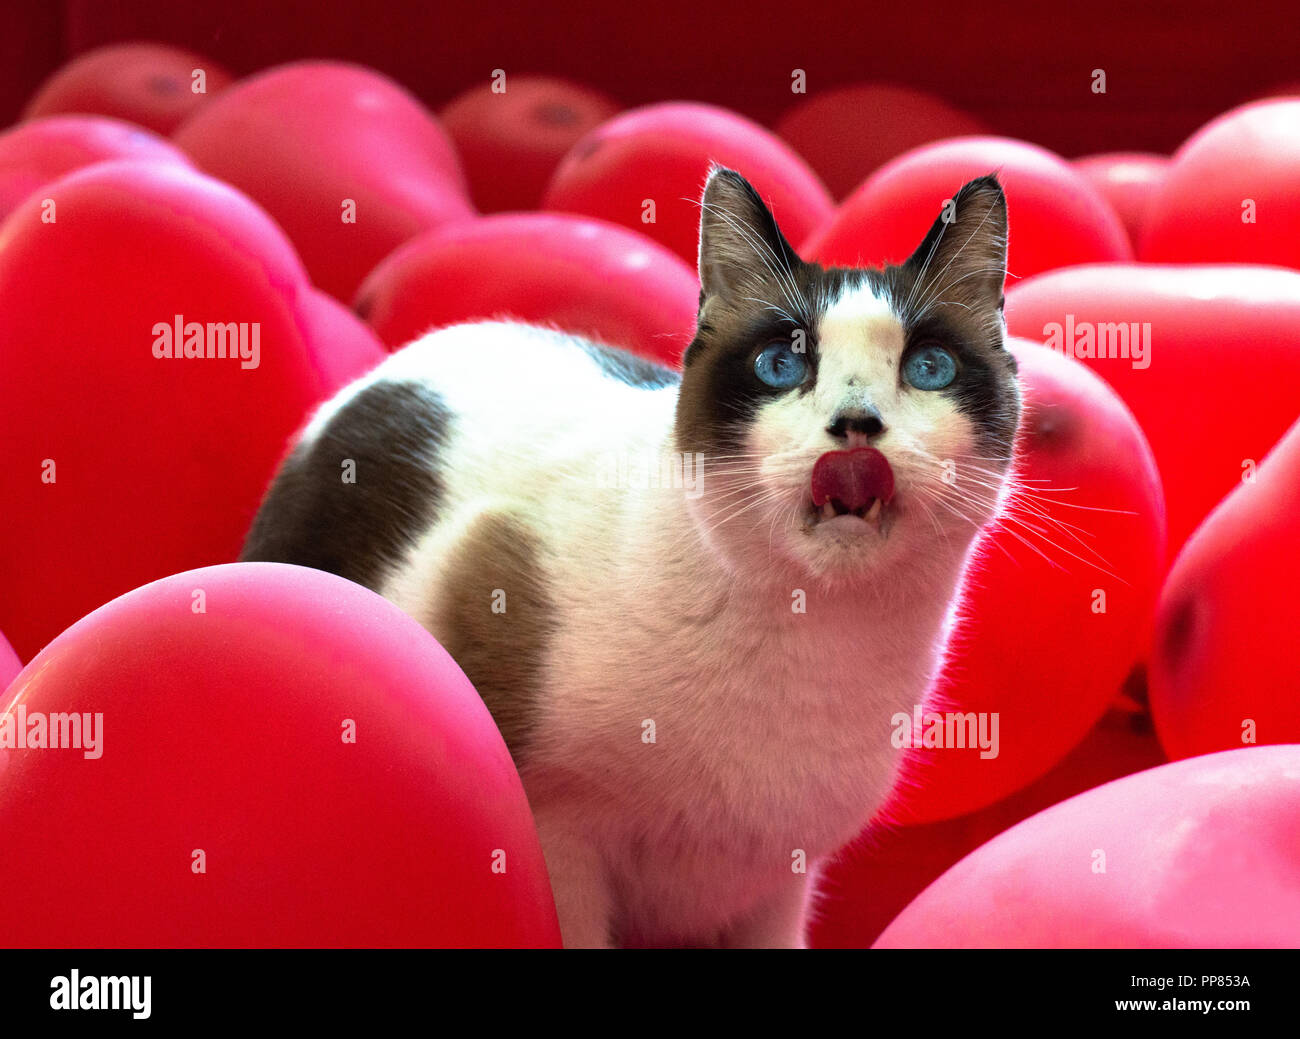 Le blanc aux yeux bleus de chat coller sa langue dehors, entouré de ballons en forme de coeur, rouge. Banque D'Images